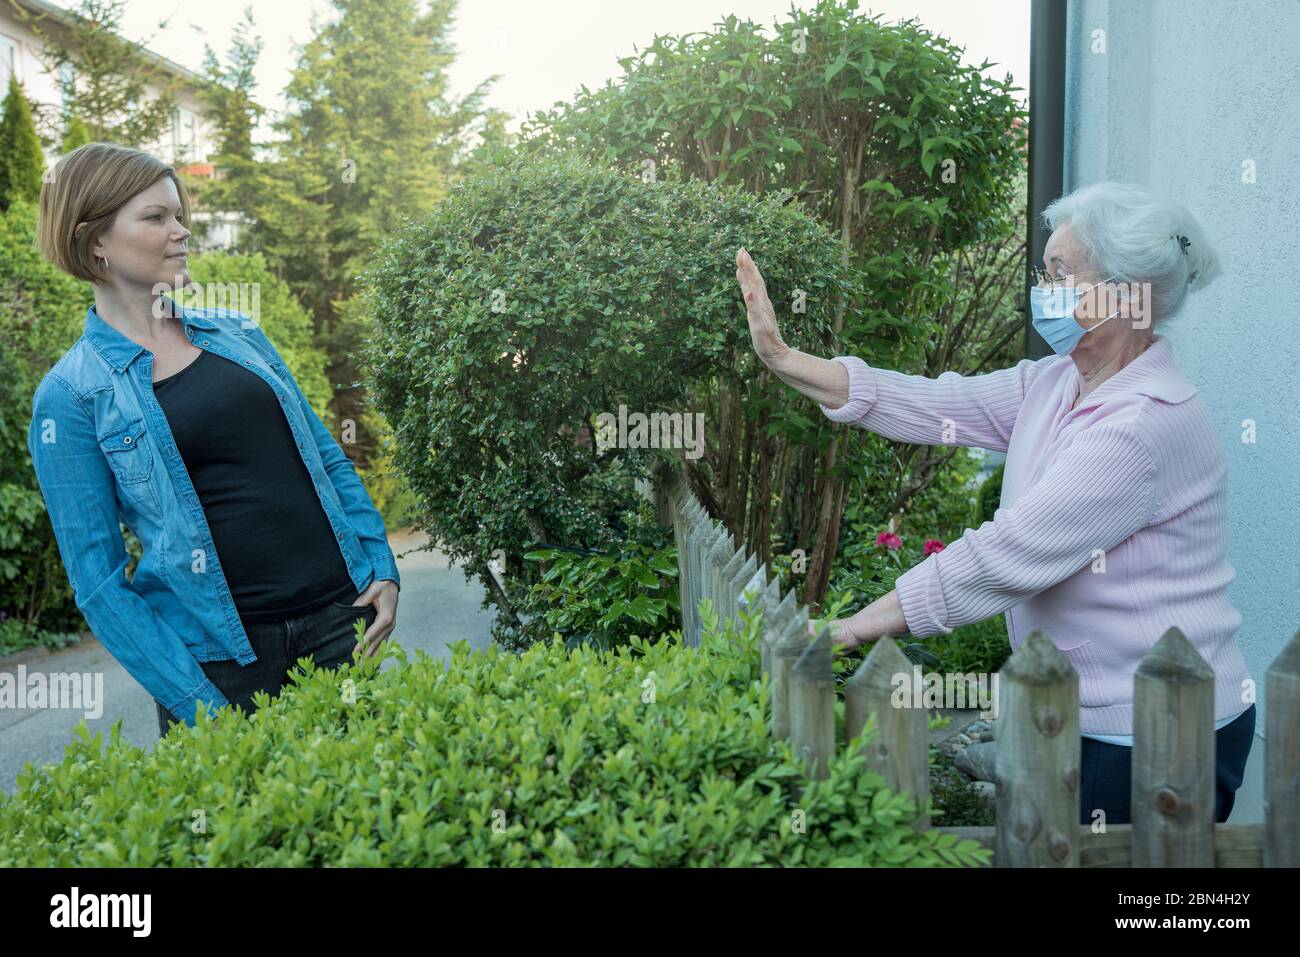 La mujer mayor con máscara facial muestra la distancia de seguridad a la mujer vecina Foto de stock